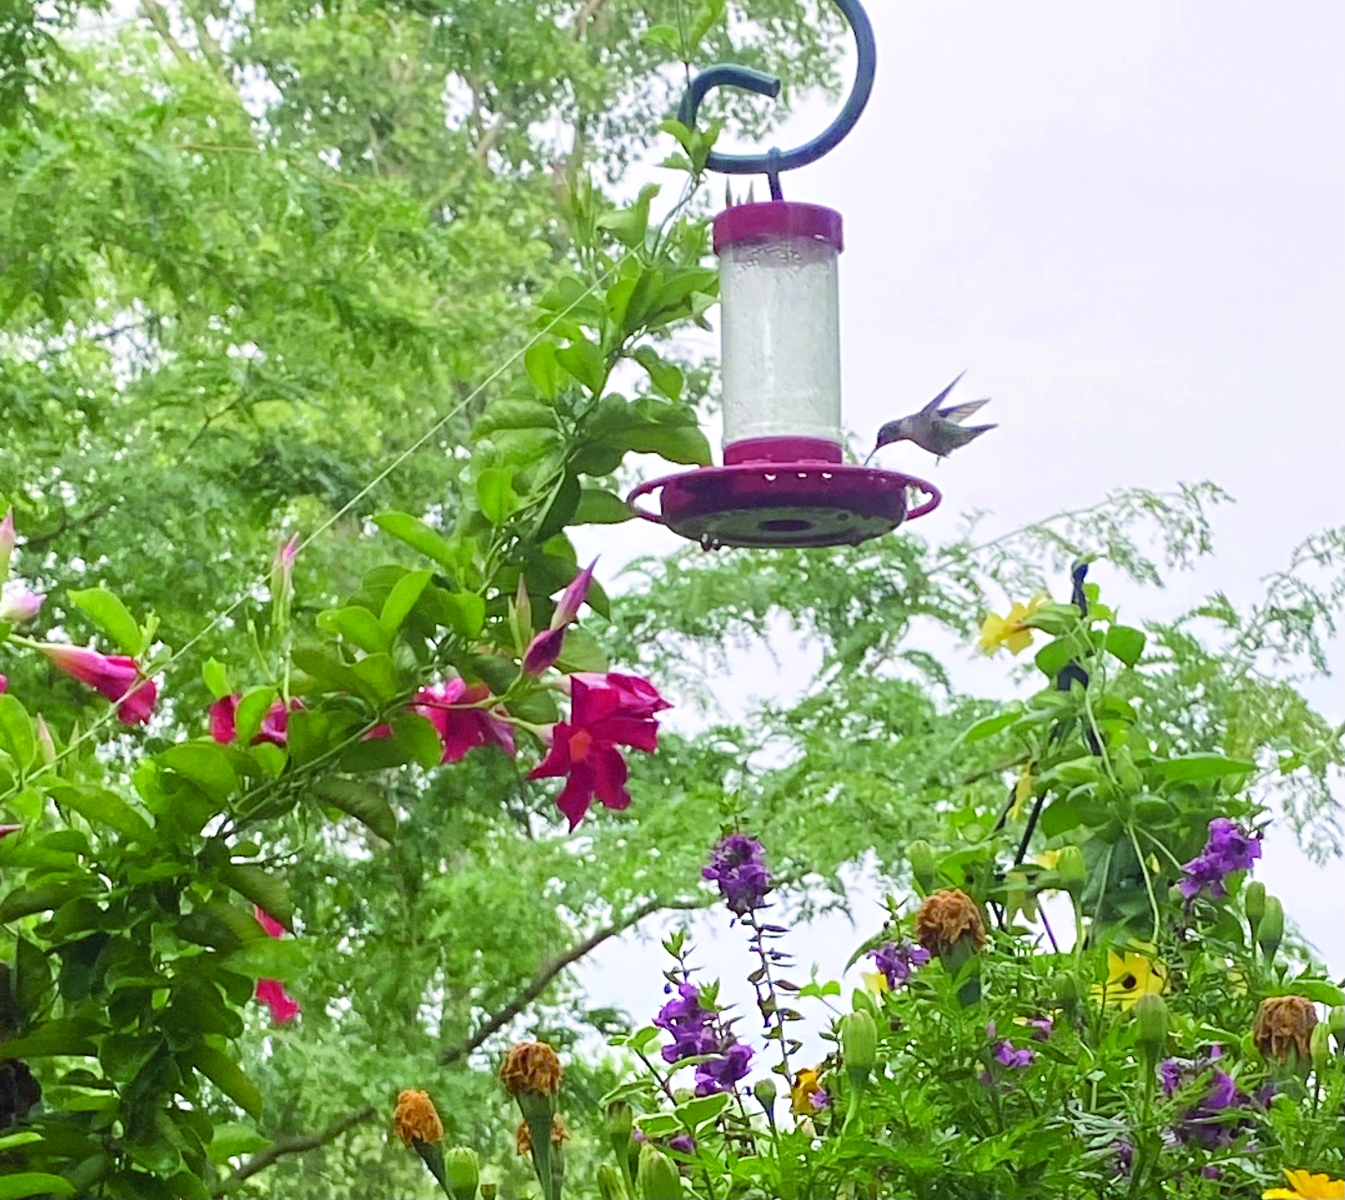 08-09-23-humming-bird-michele-2-feeder